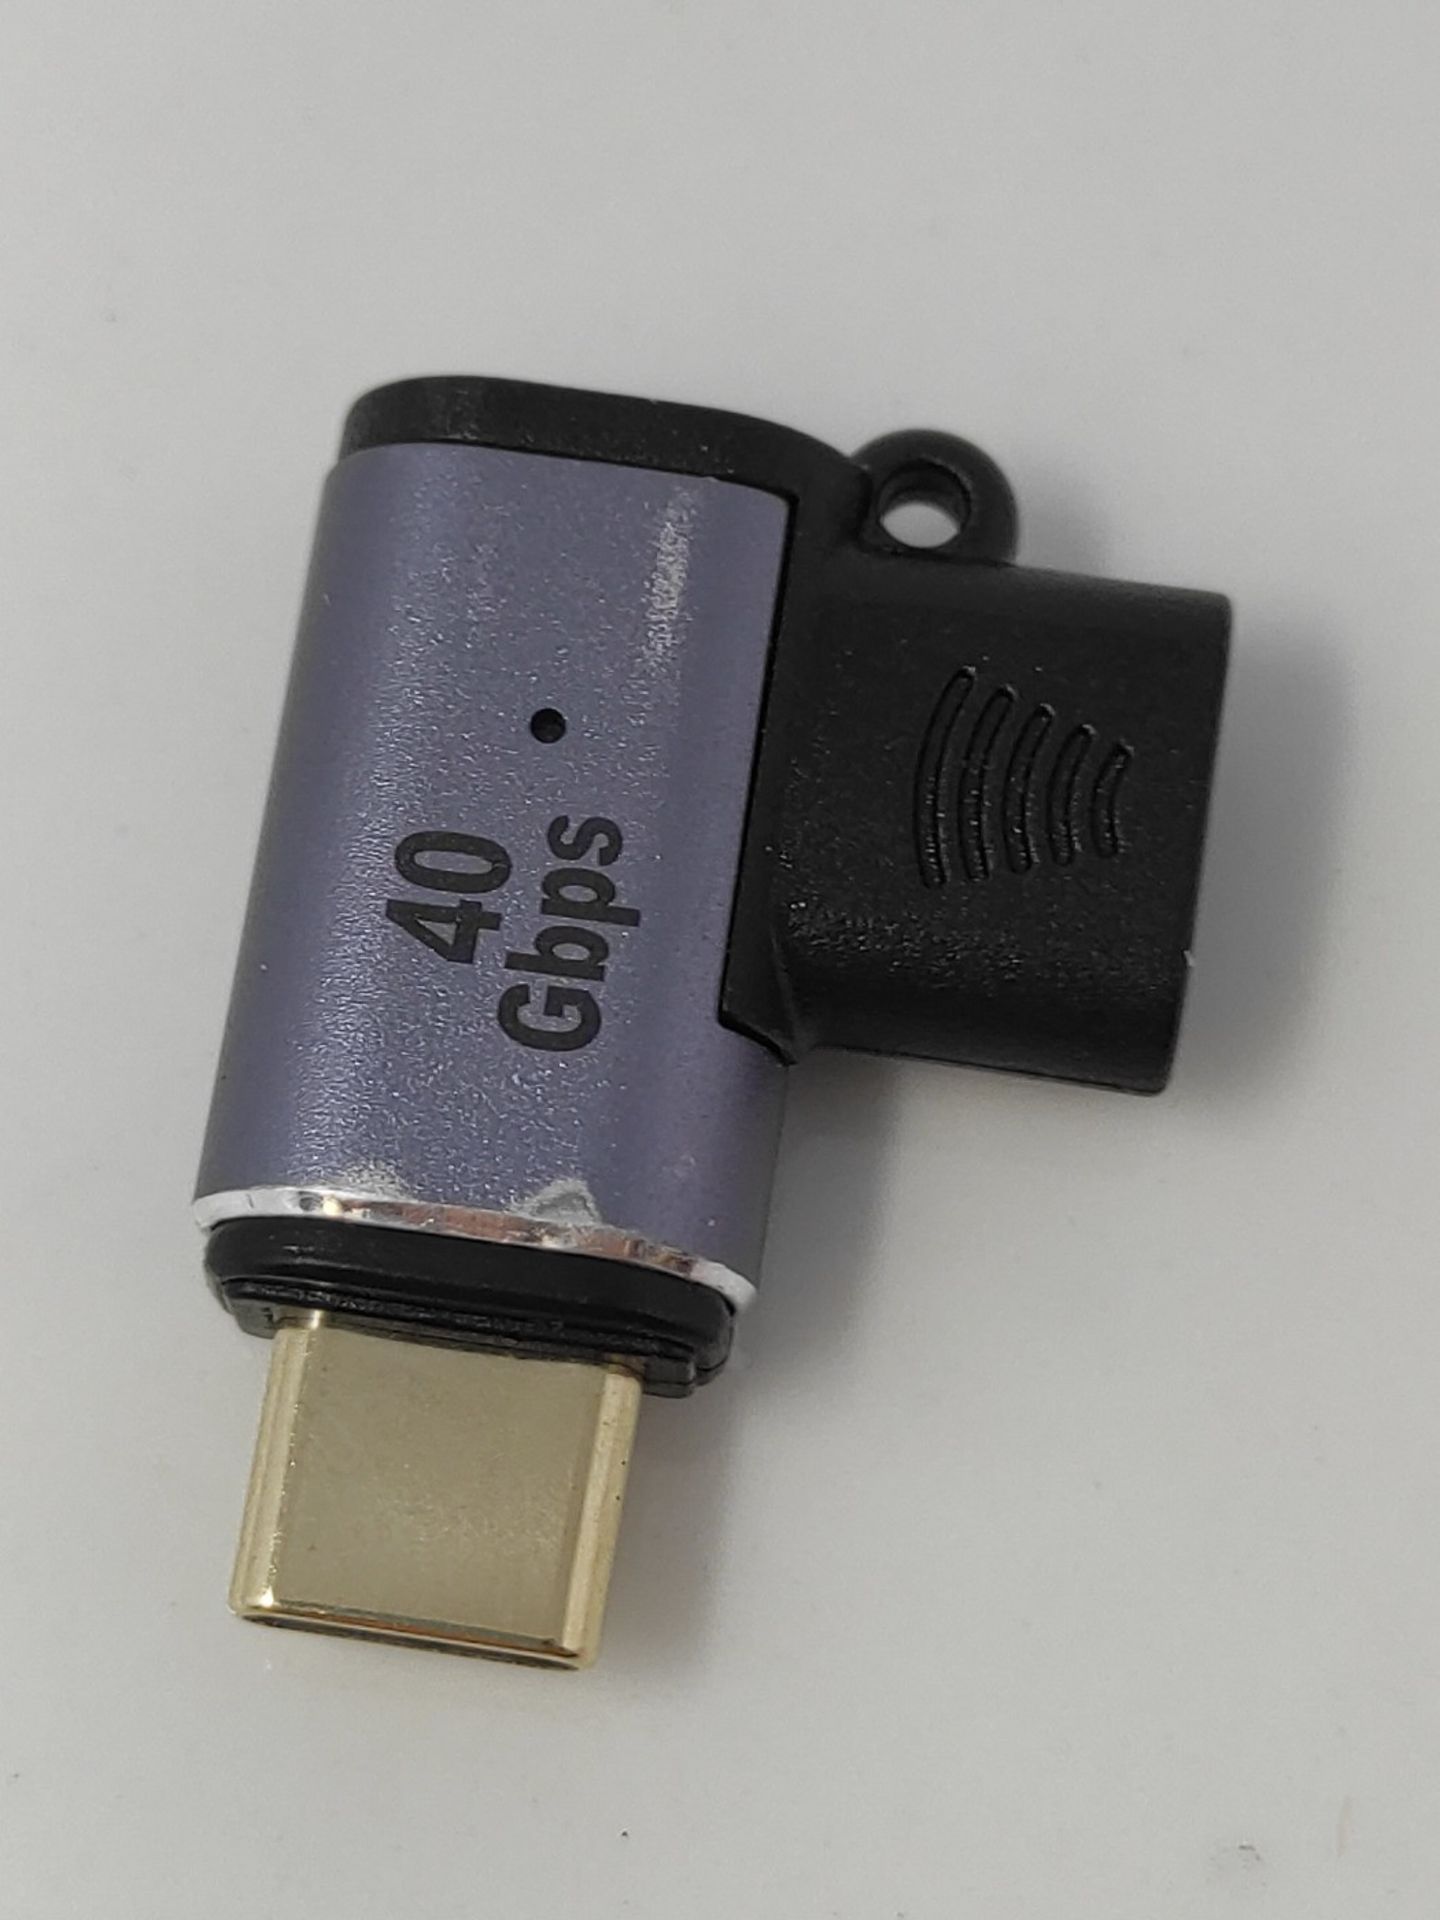 MoKo USB C Magnetic Adapter 2 Pack, 90 Degree Magnetic Breakaway USB C Adapter 24 Pin